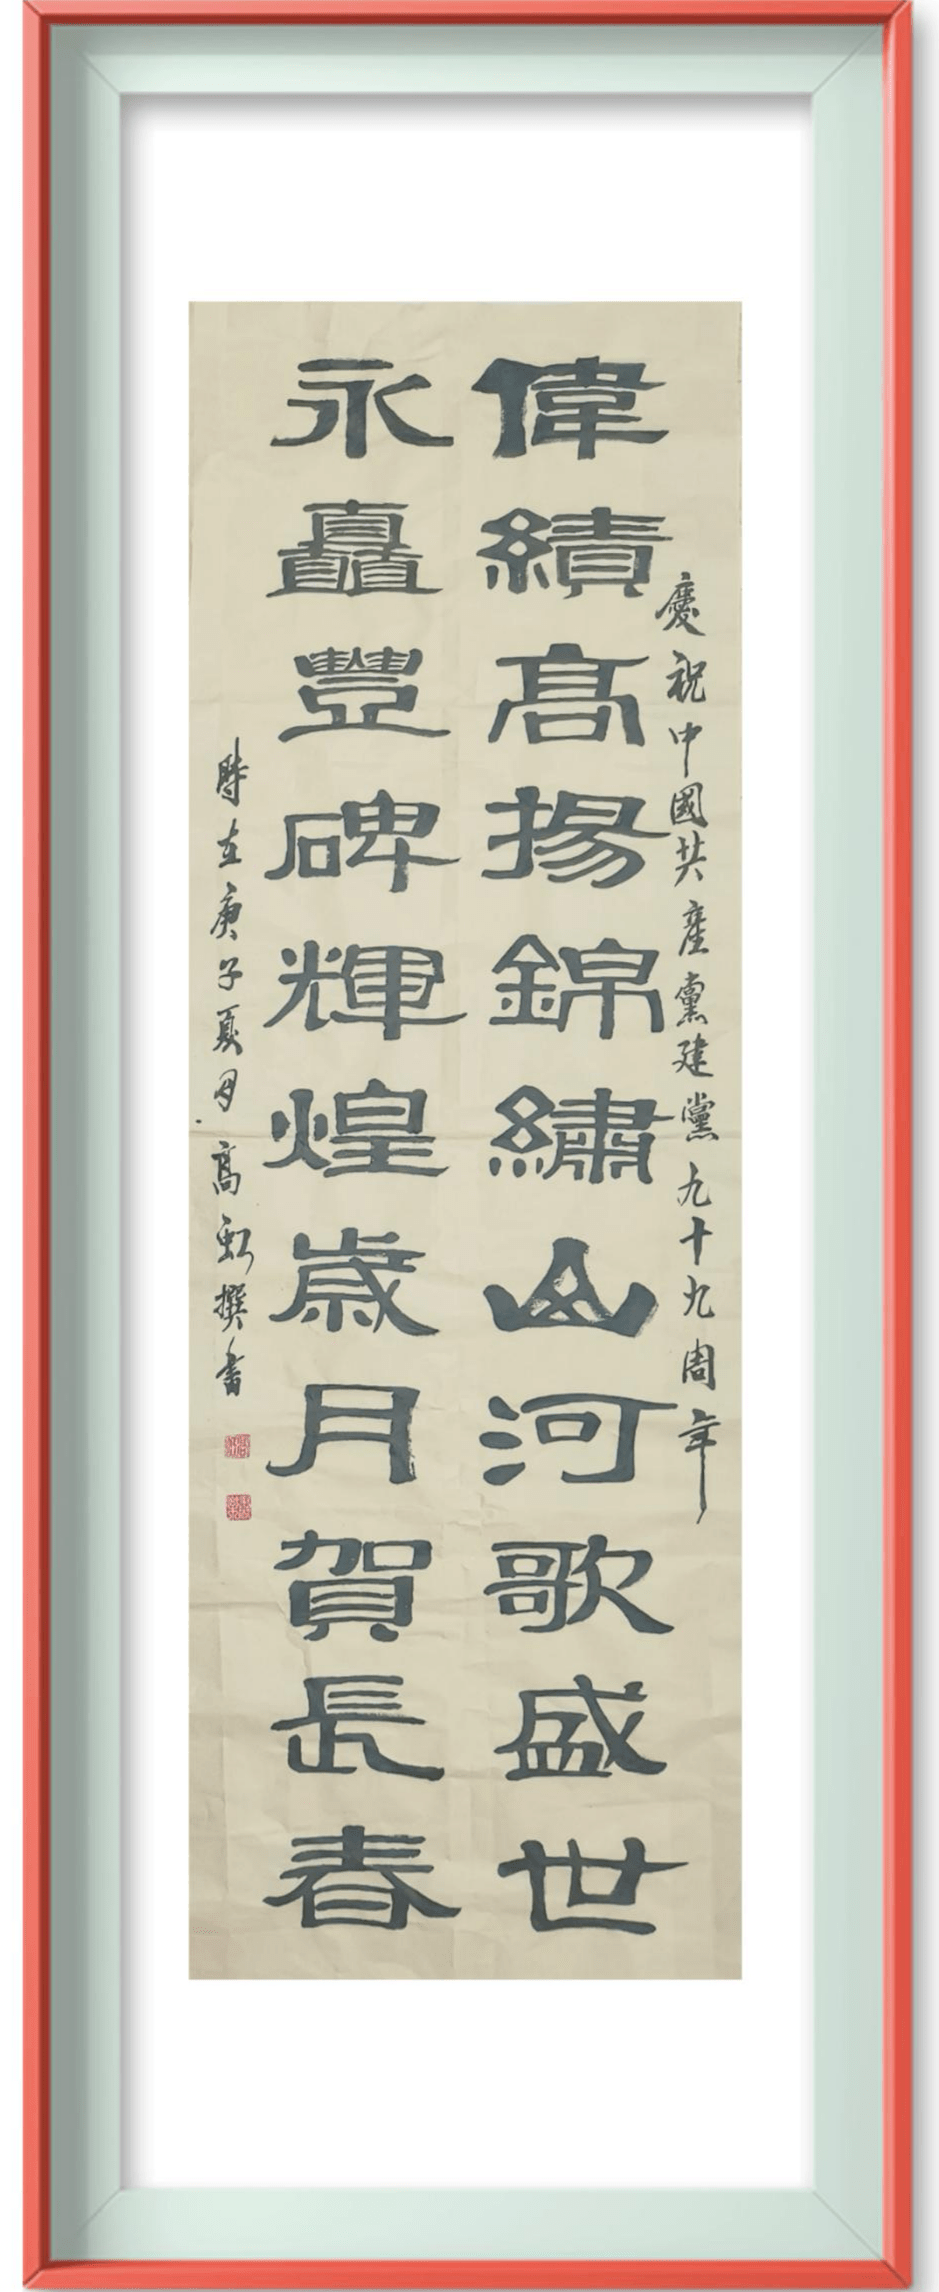 省图书馆书画艺术沙龙庆七·一翰墨飘香颂党恩书法作品展